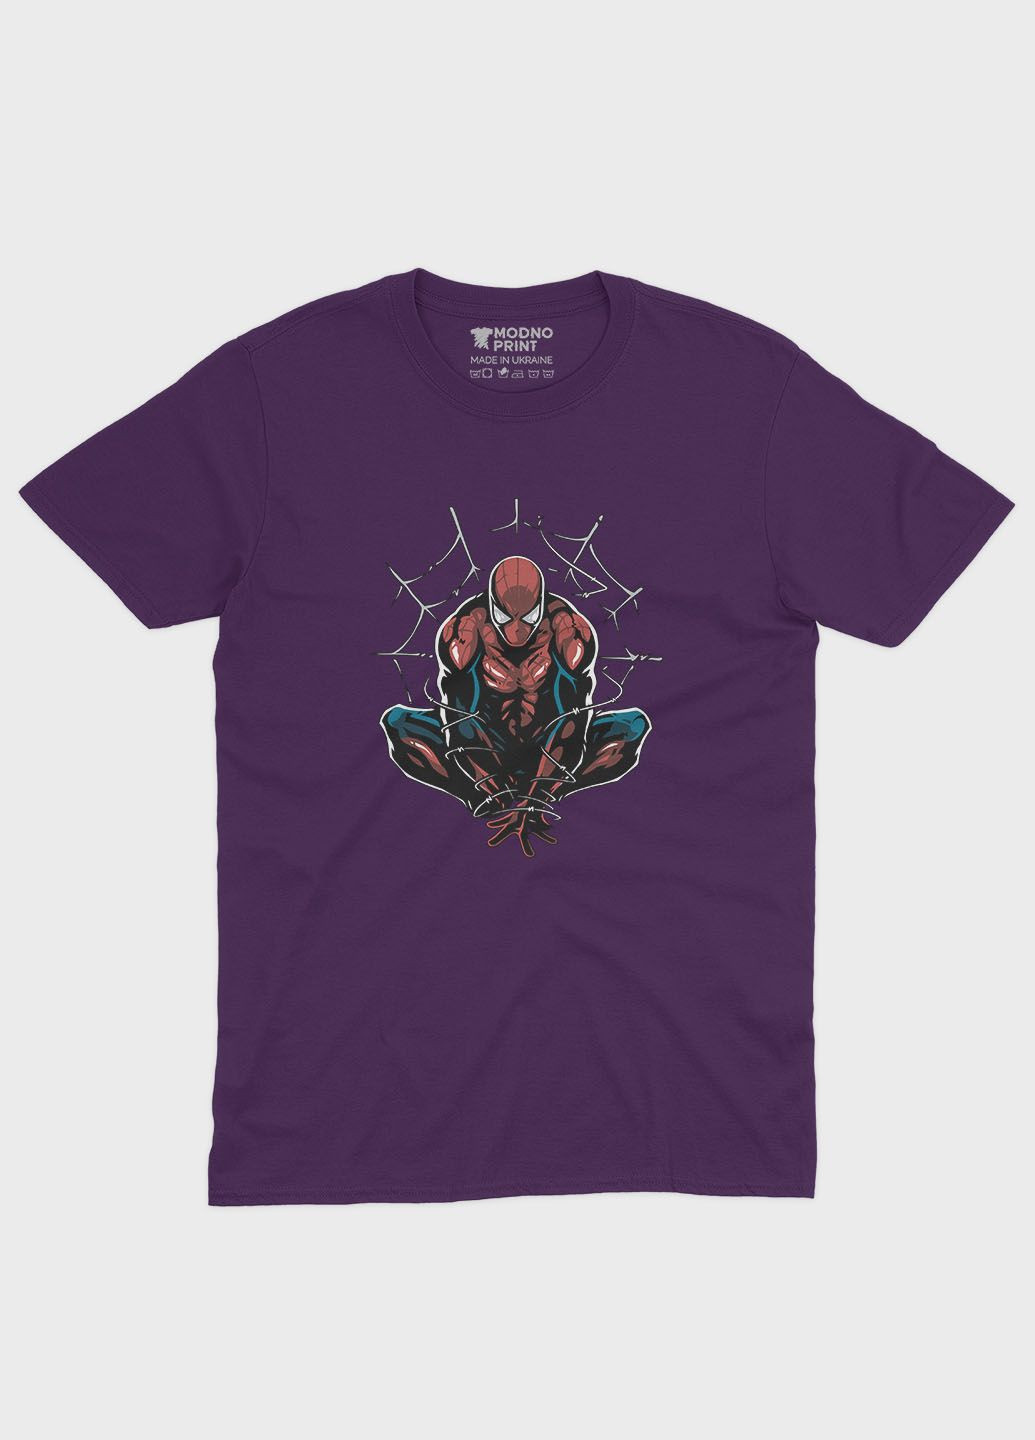 Фиолетовая демисезонная футболка для девочки с принтом супергероя - человек-паук (ts001-1-dby-006-014-086-g) Modno